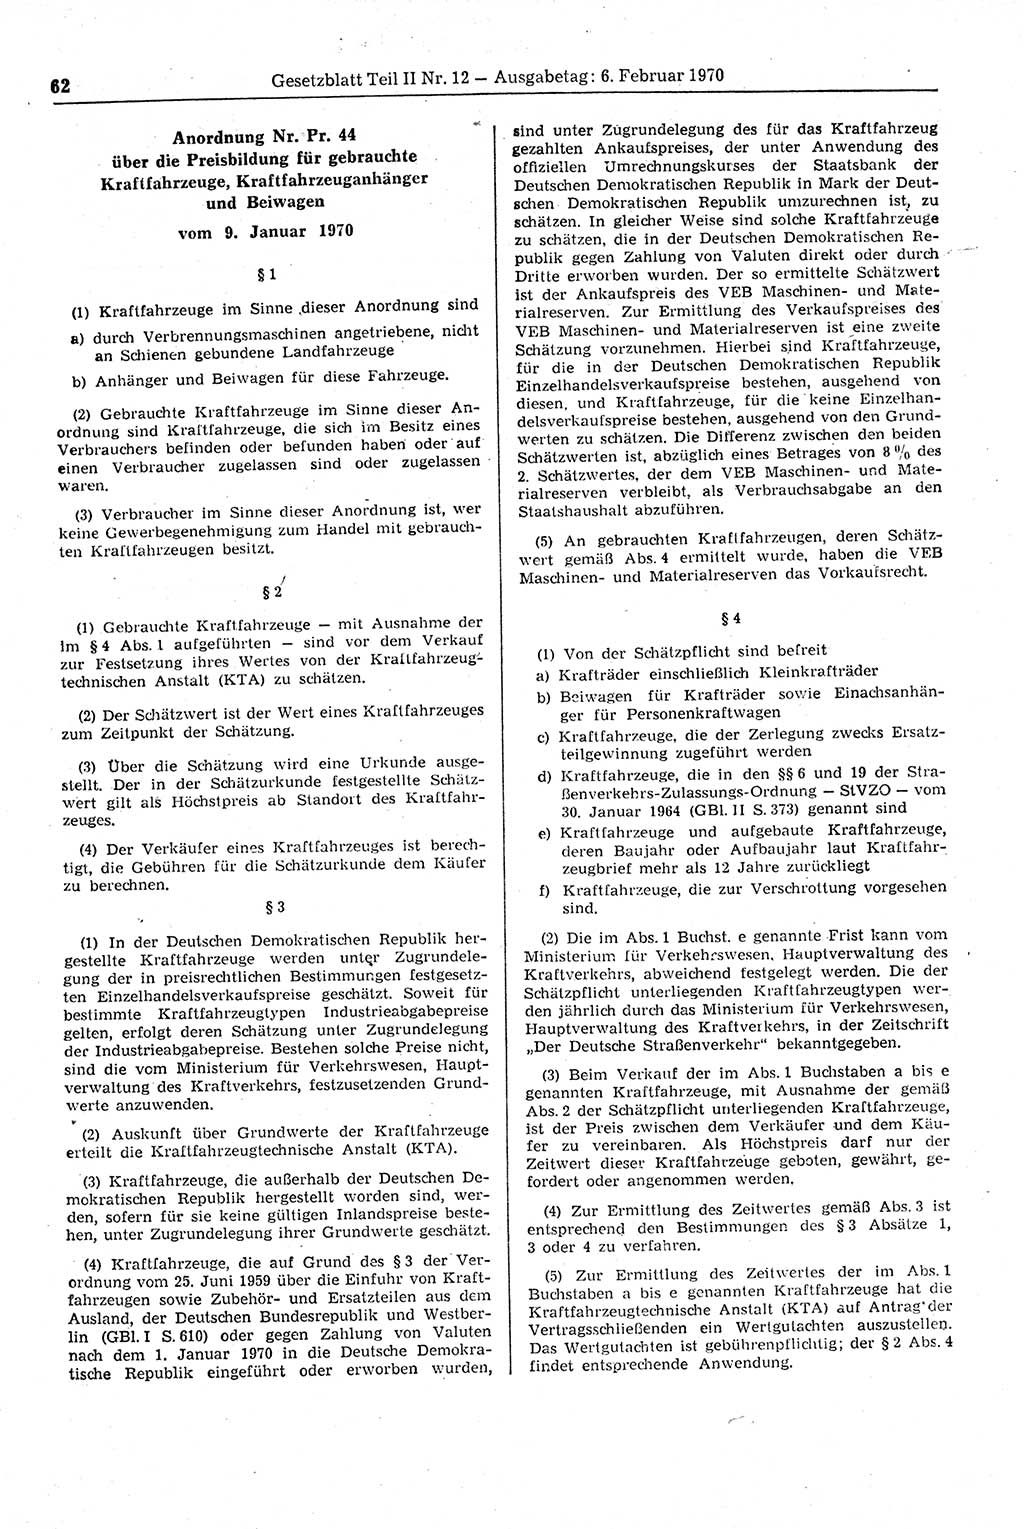 Gesetzblatt (GBl.) der Deutschen Demokratischen Republik (DDR) Teil ⅠⅠ 1970, Seite 62 (GBl. DDR ⅠⅠ 1970, S. 62)